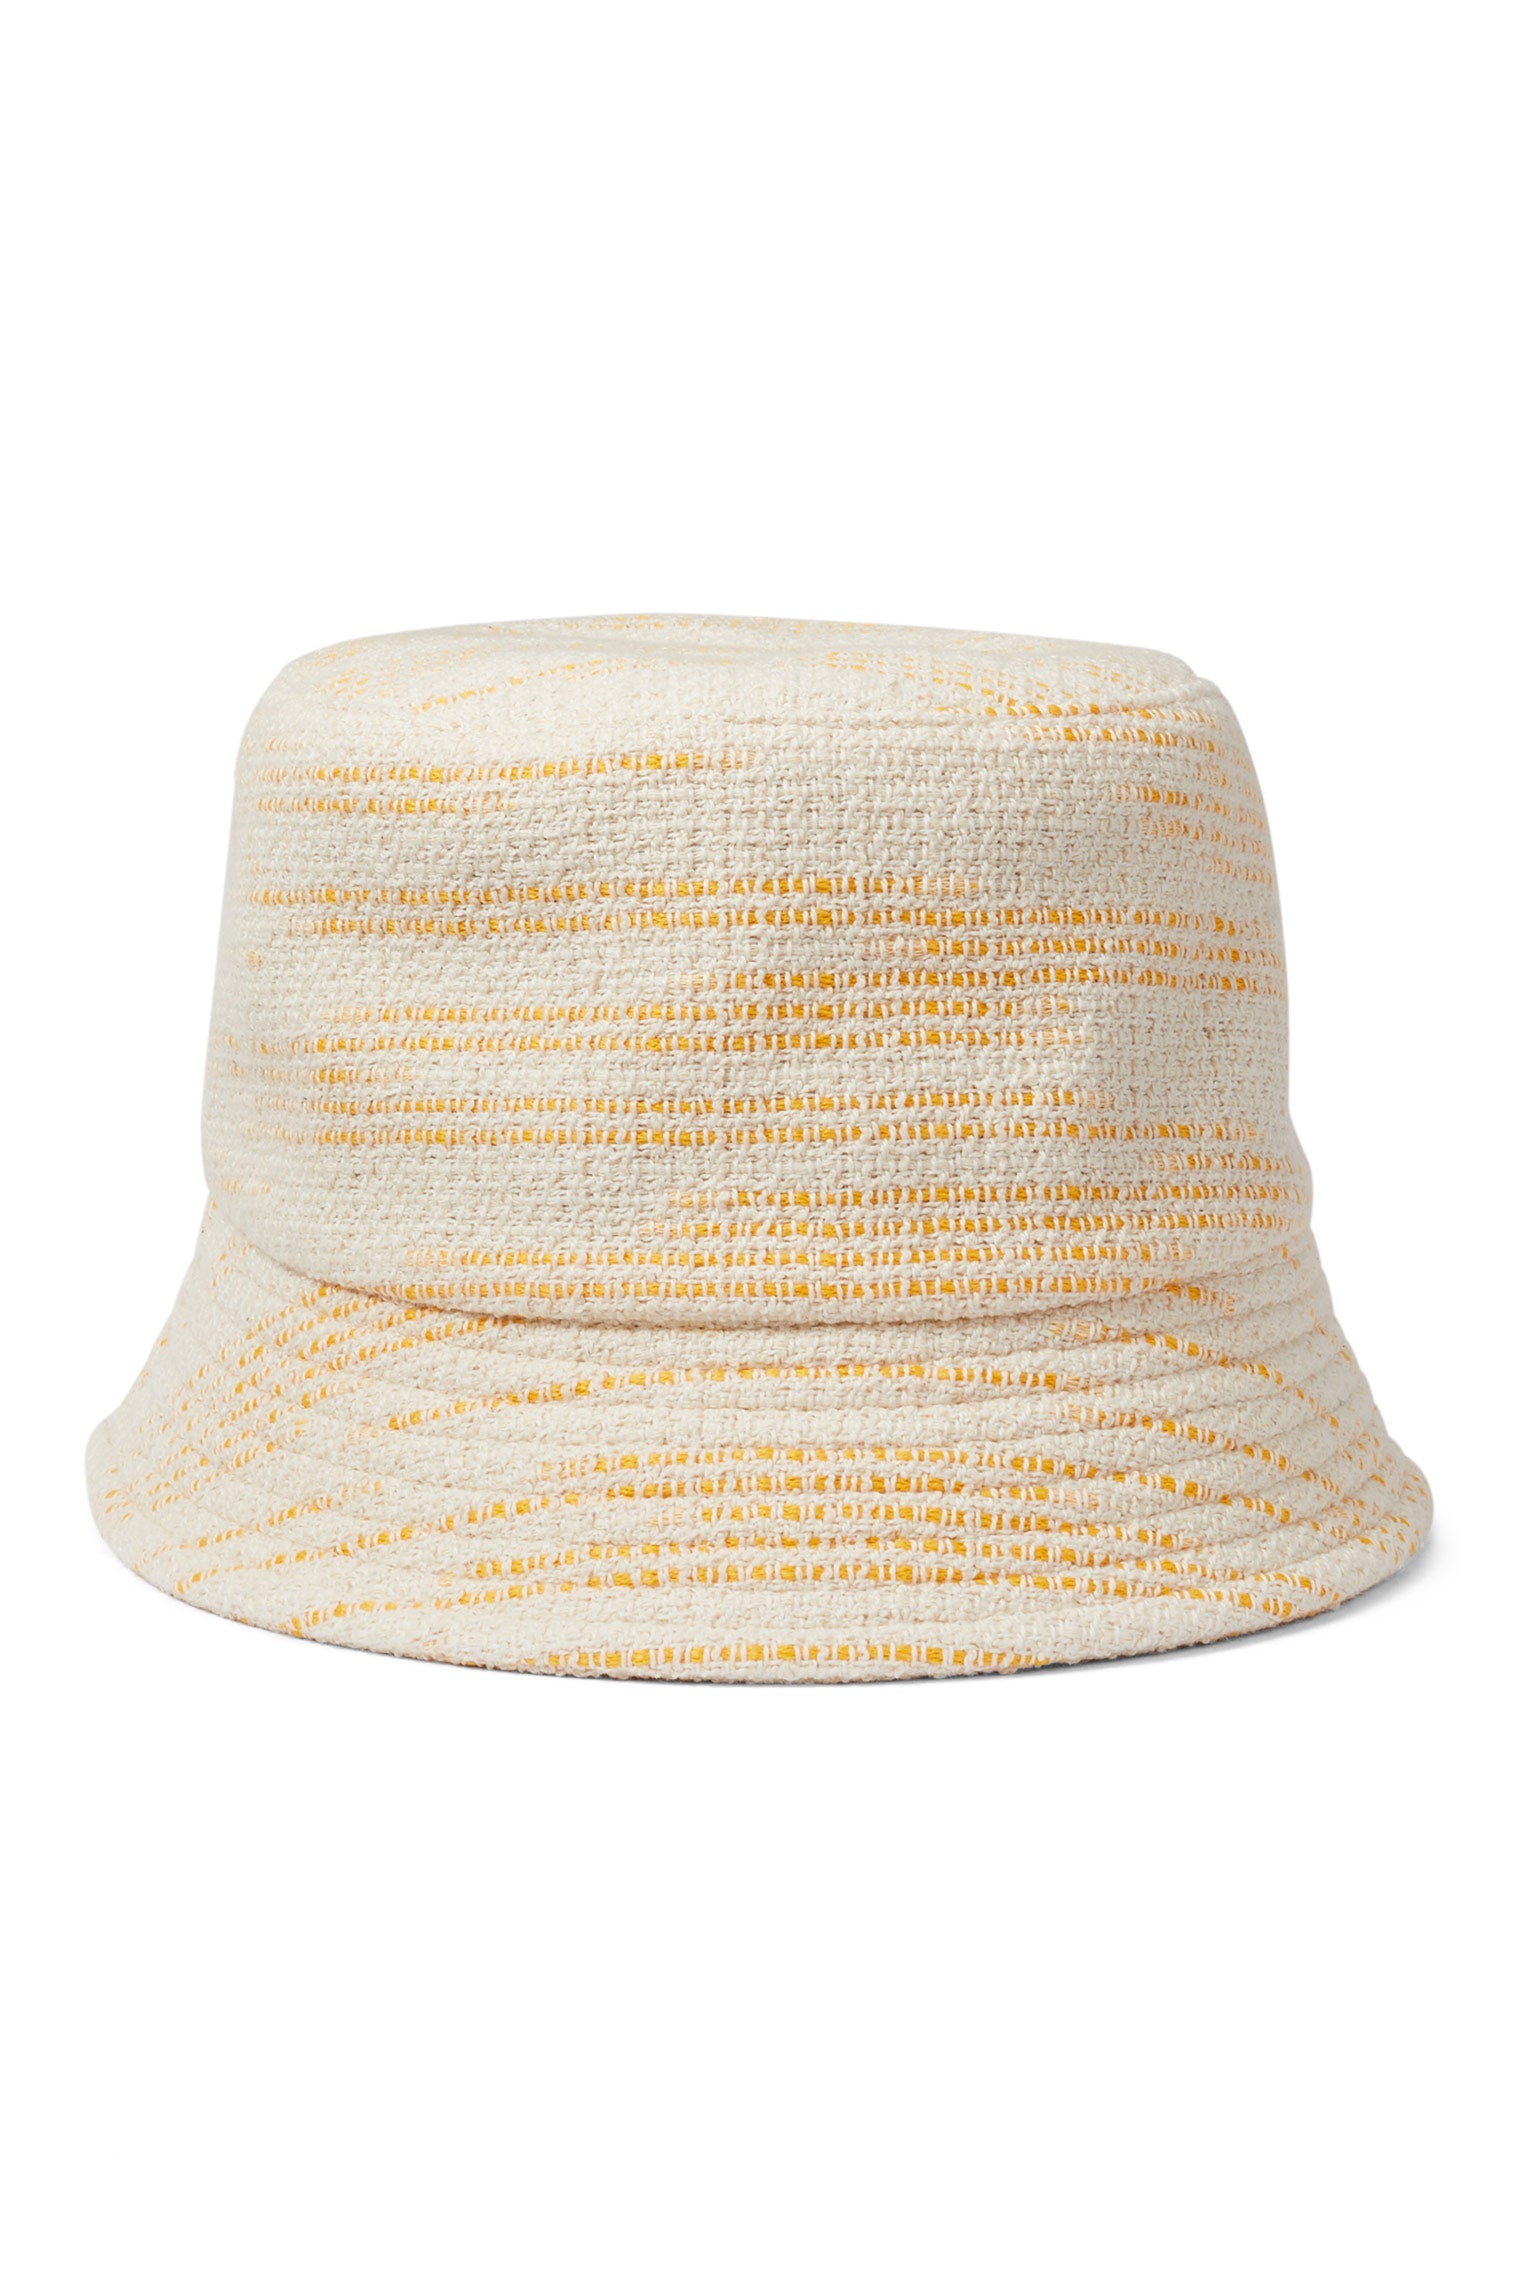 Rye Yellow Bucket Hat - Women's Bucket Hats - Lock & Co. Hatters London UK